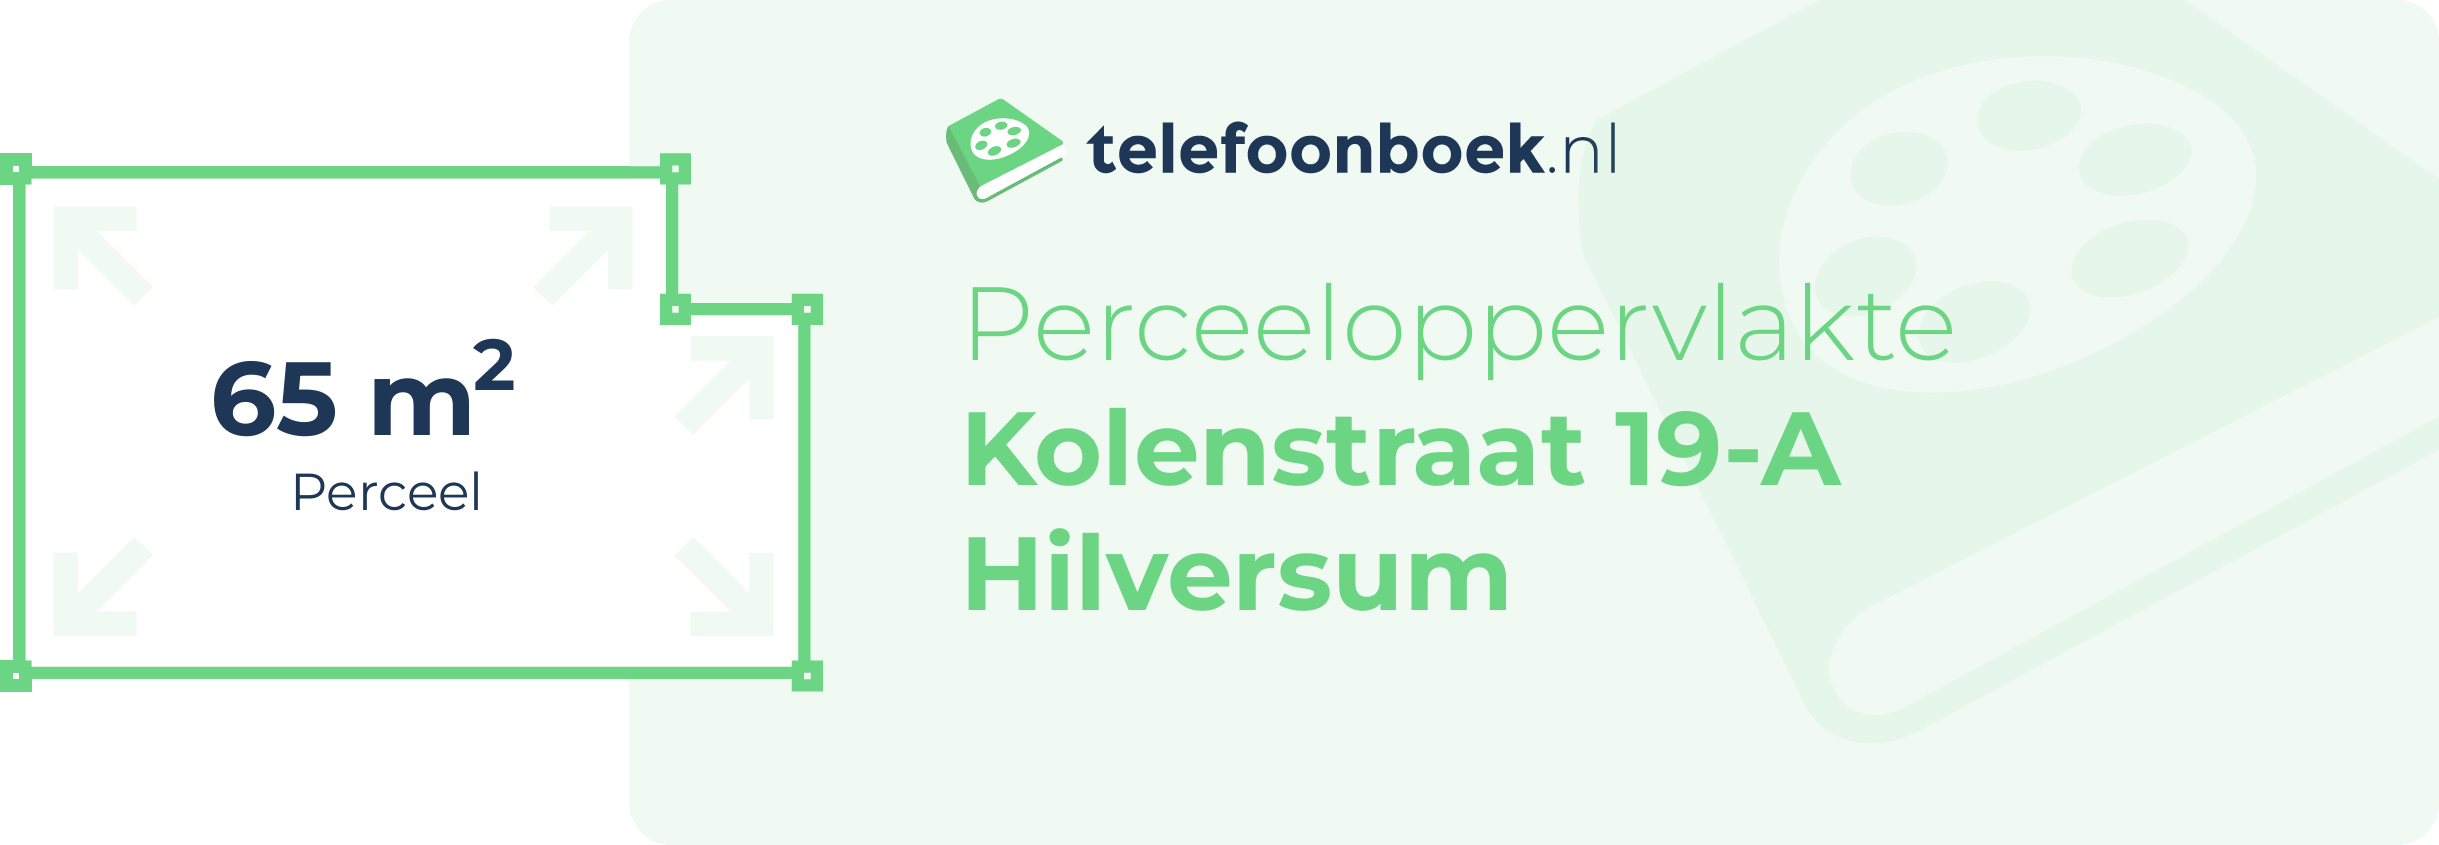 Perceeloppervlakte Kolenstraat 19-A Hilversum